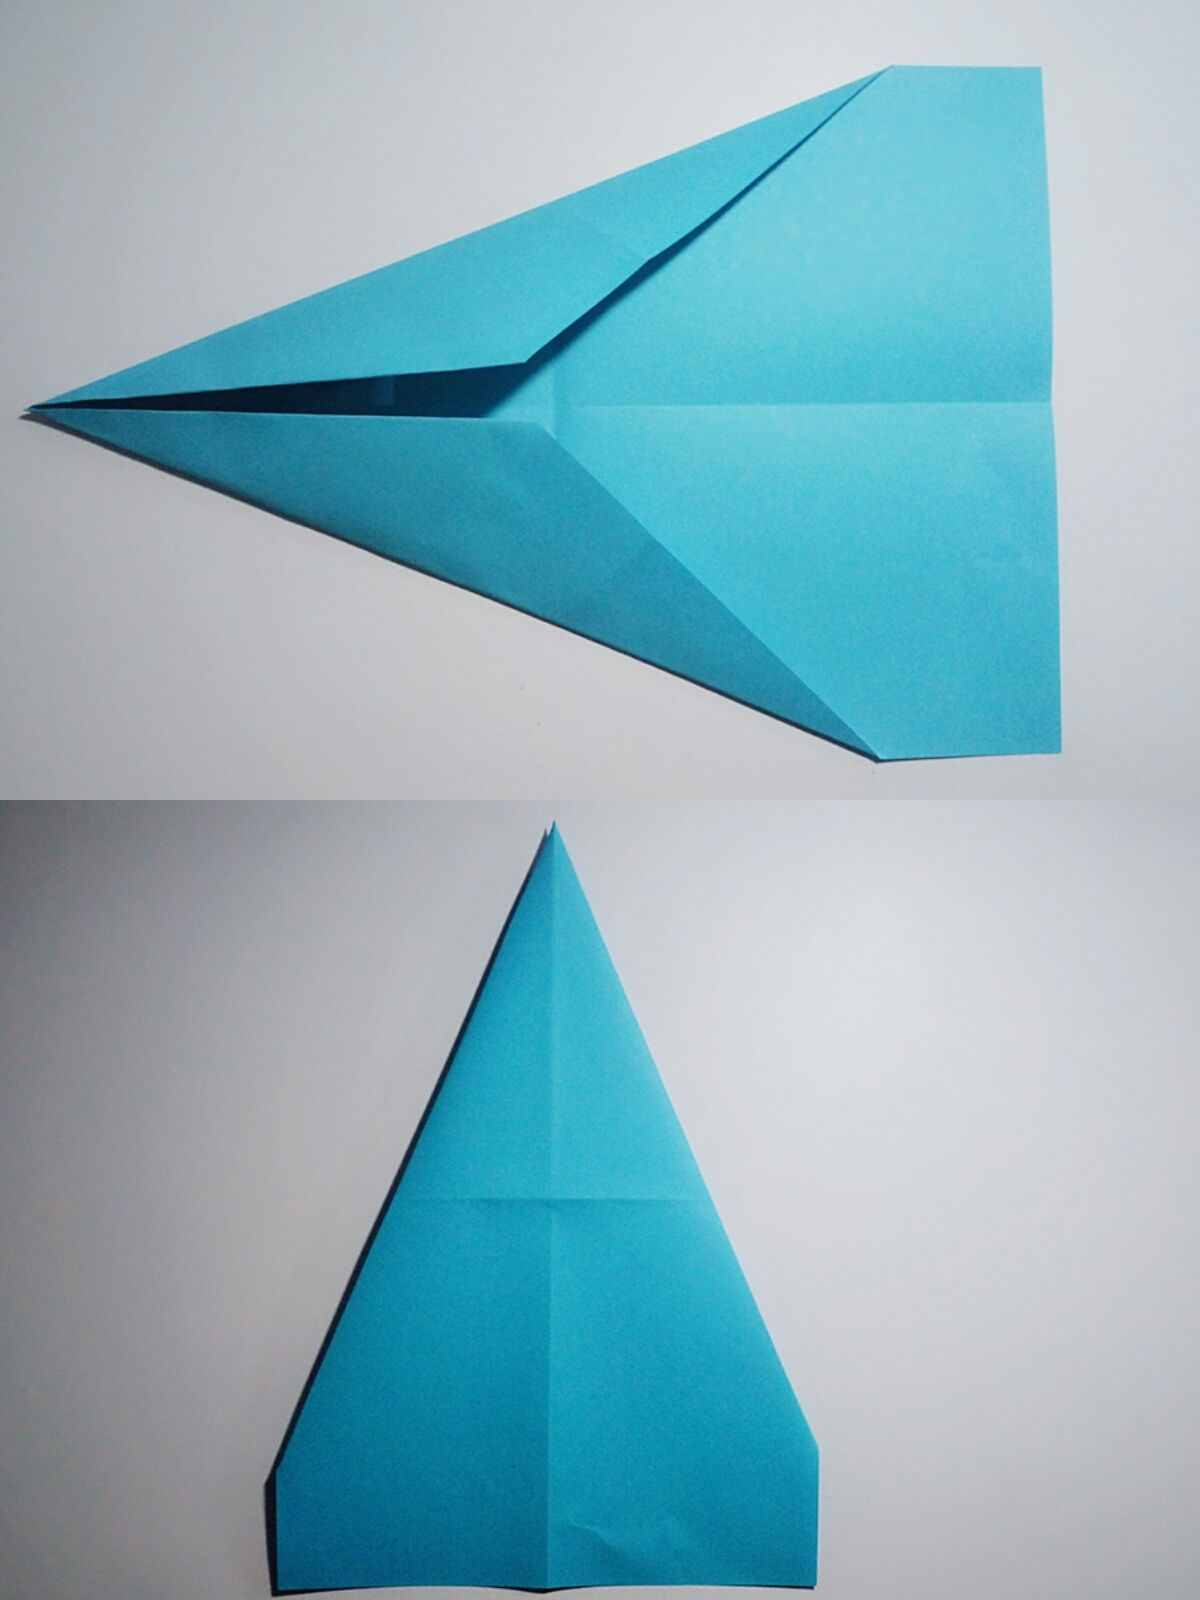 纸飞机折纸大全下载